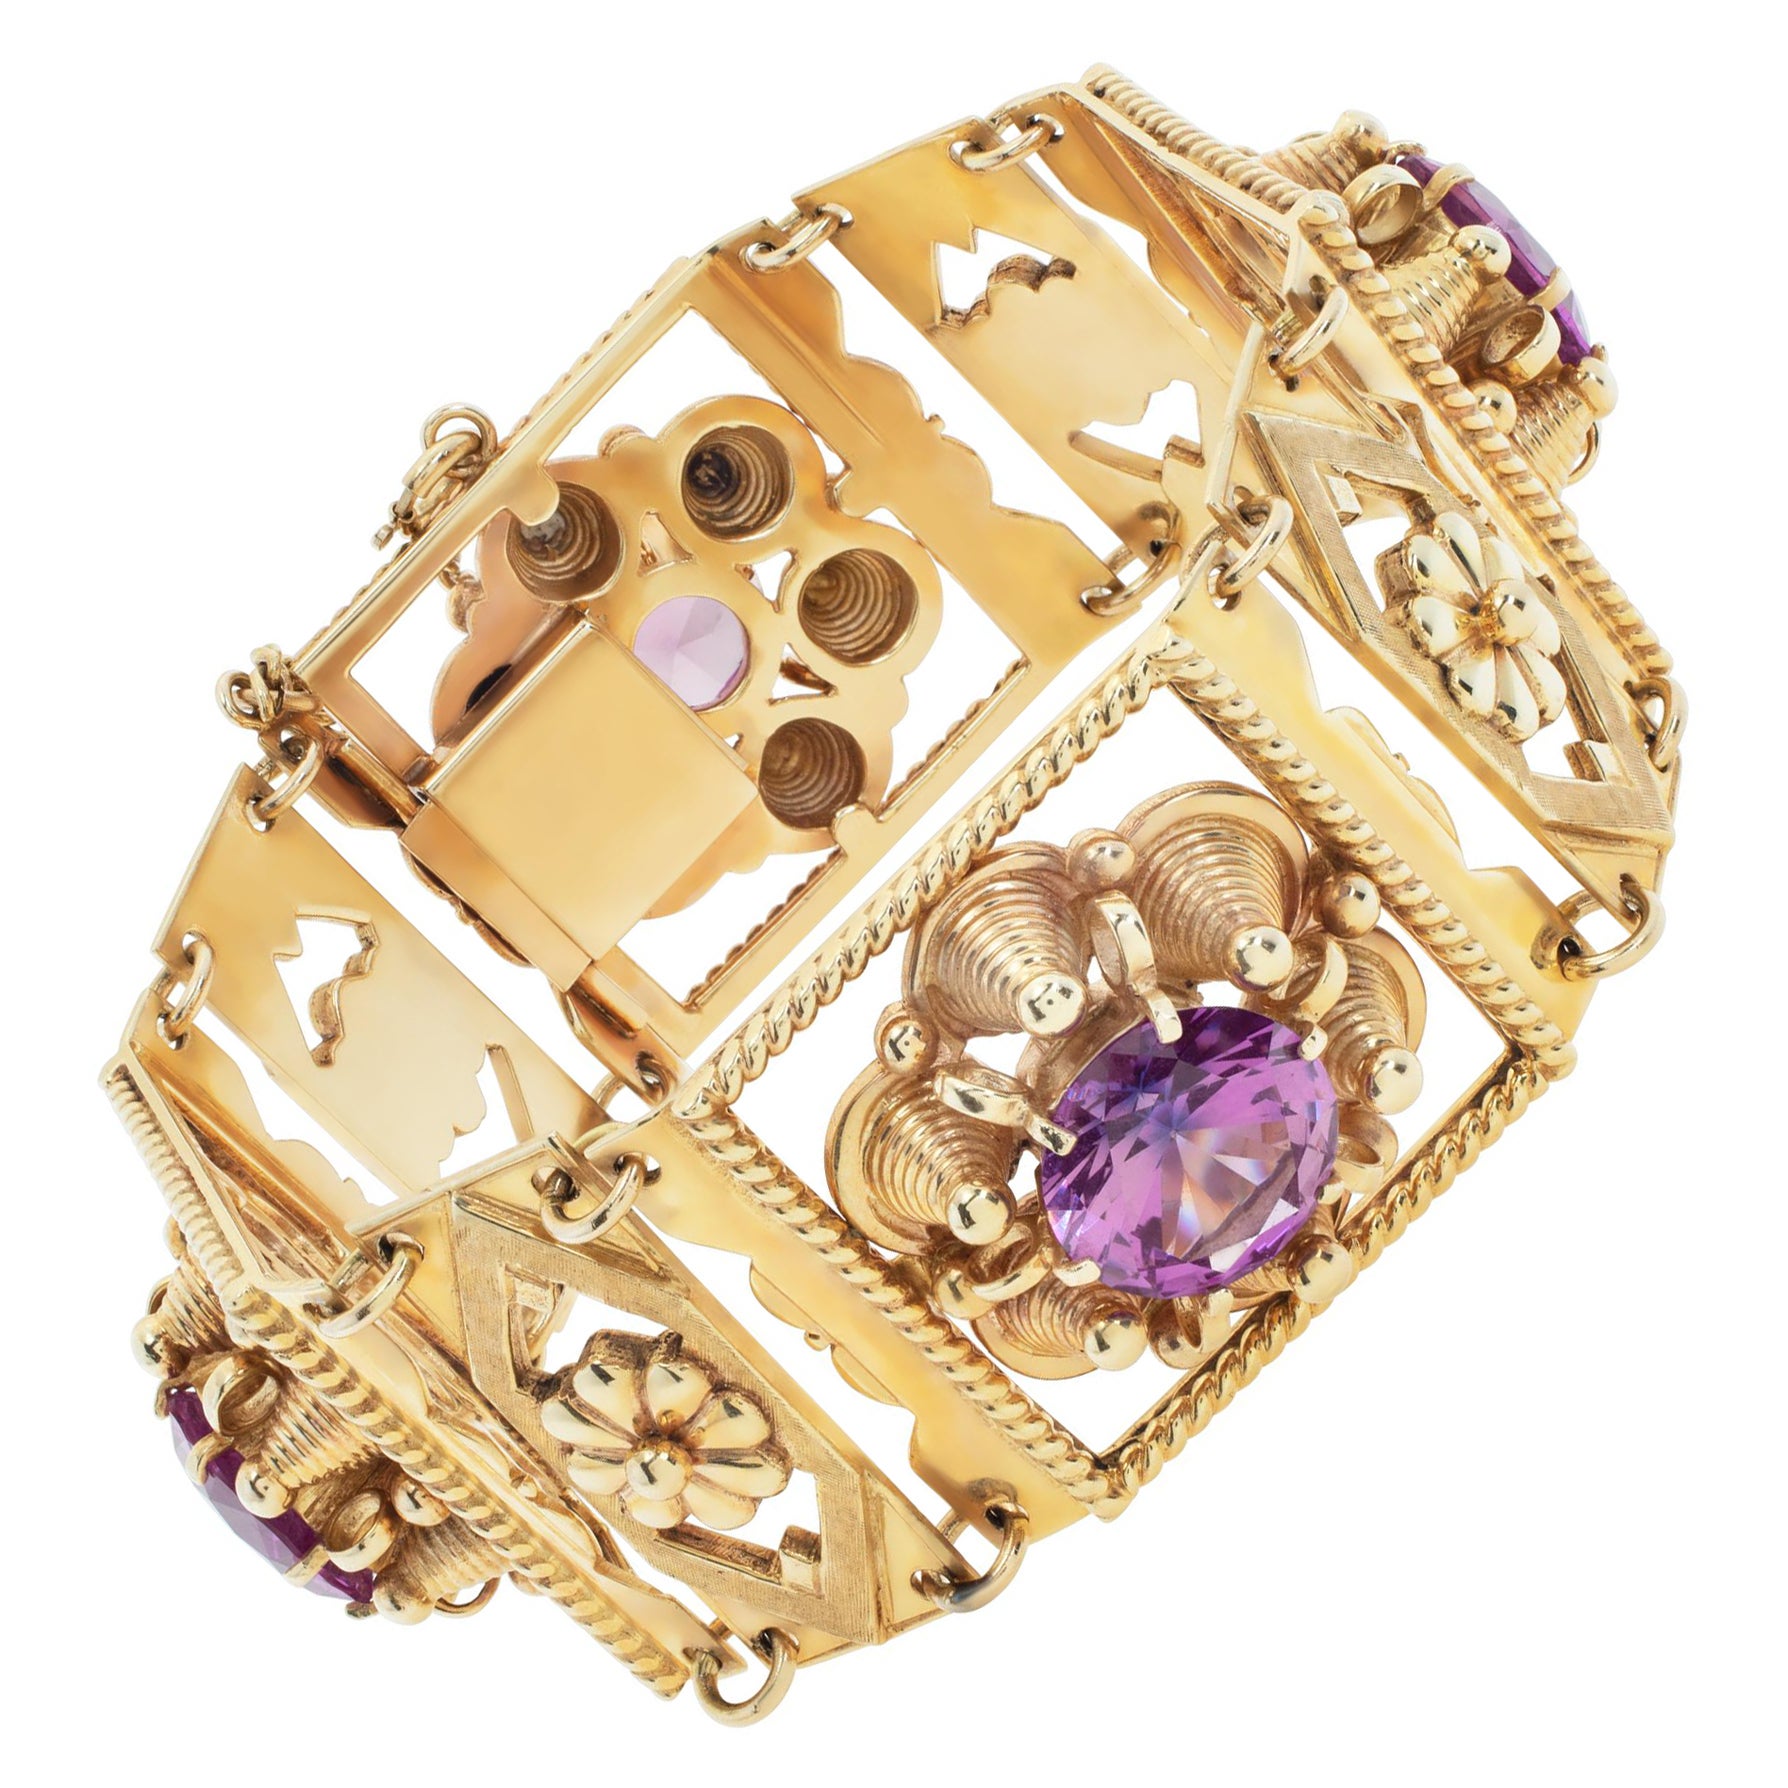 Viktorianisch inspiriertes 14k Gelbgold-Armband im viktorianischen Stil mit vier rosa Steinen